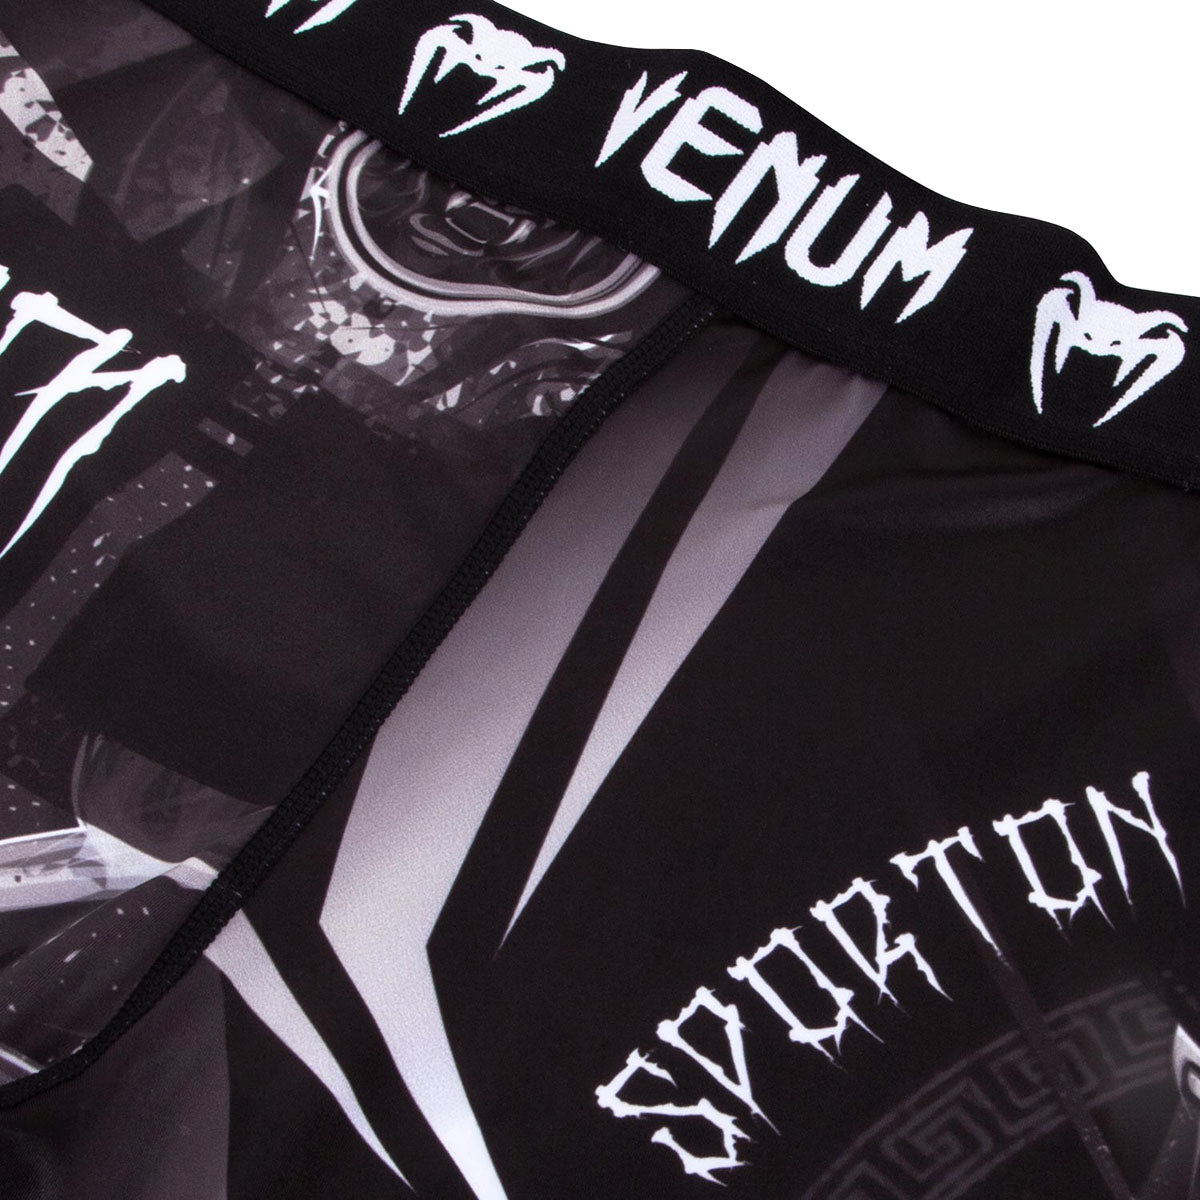 Venum Gladiator 3.0 Dry Tech MMA Compression Spats - Black/White Venum